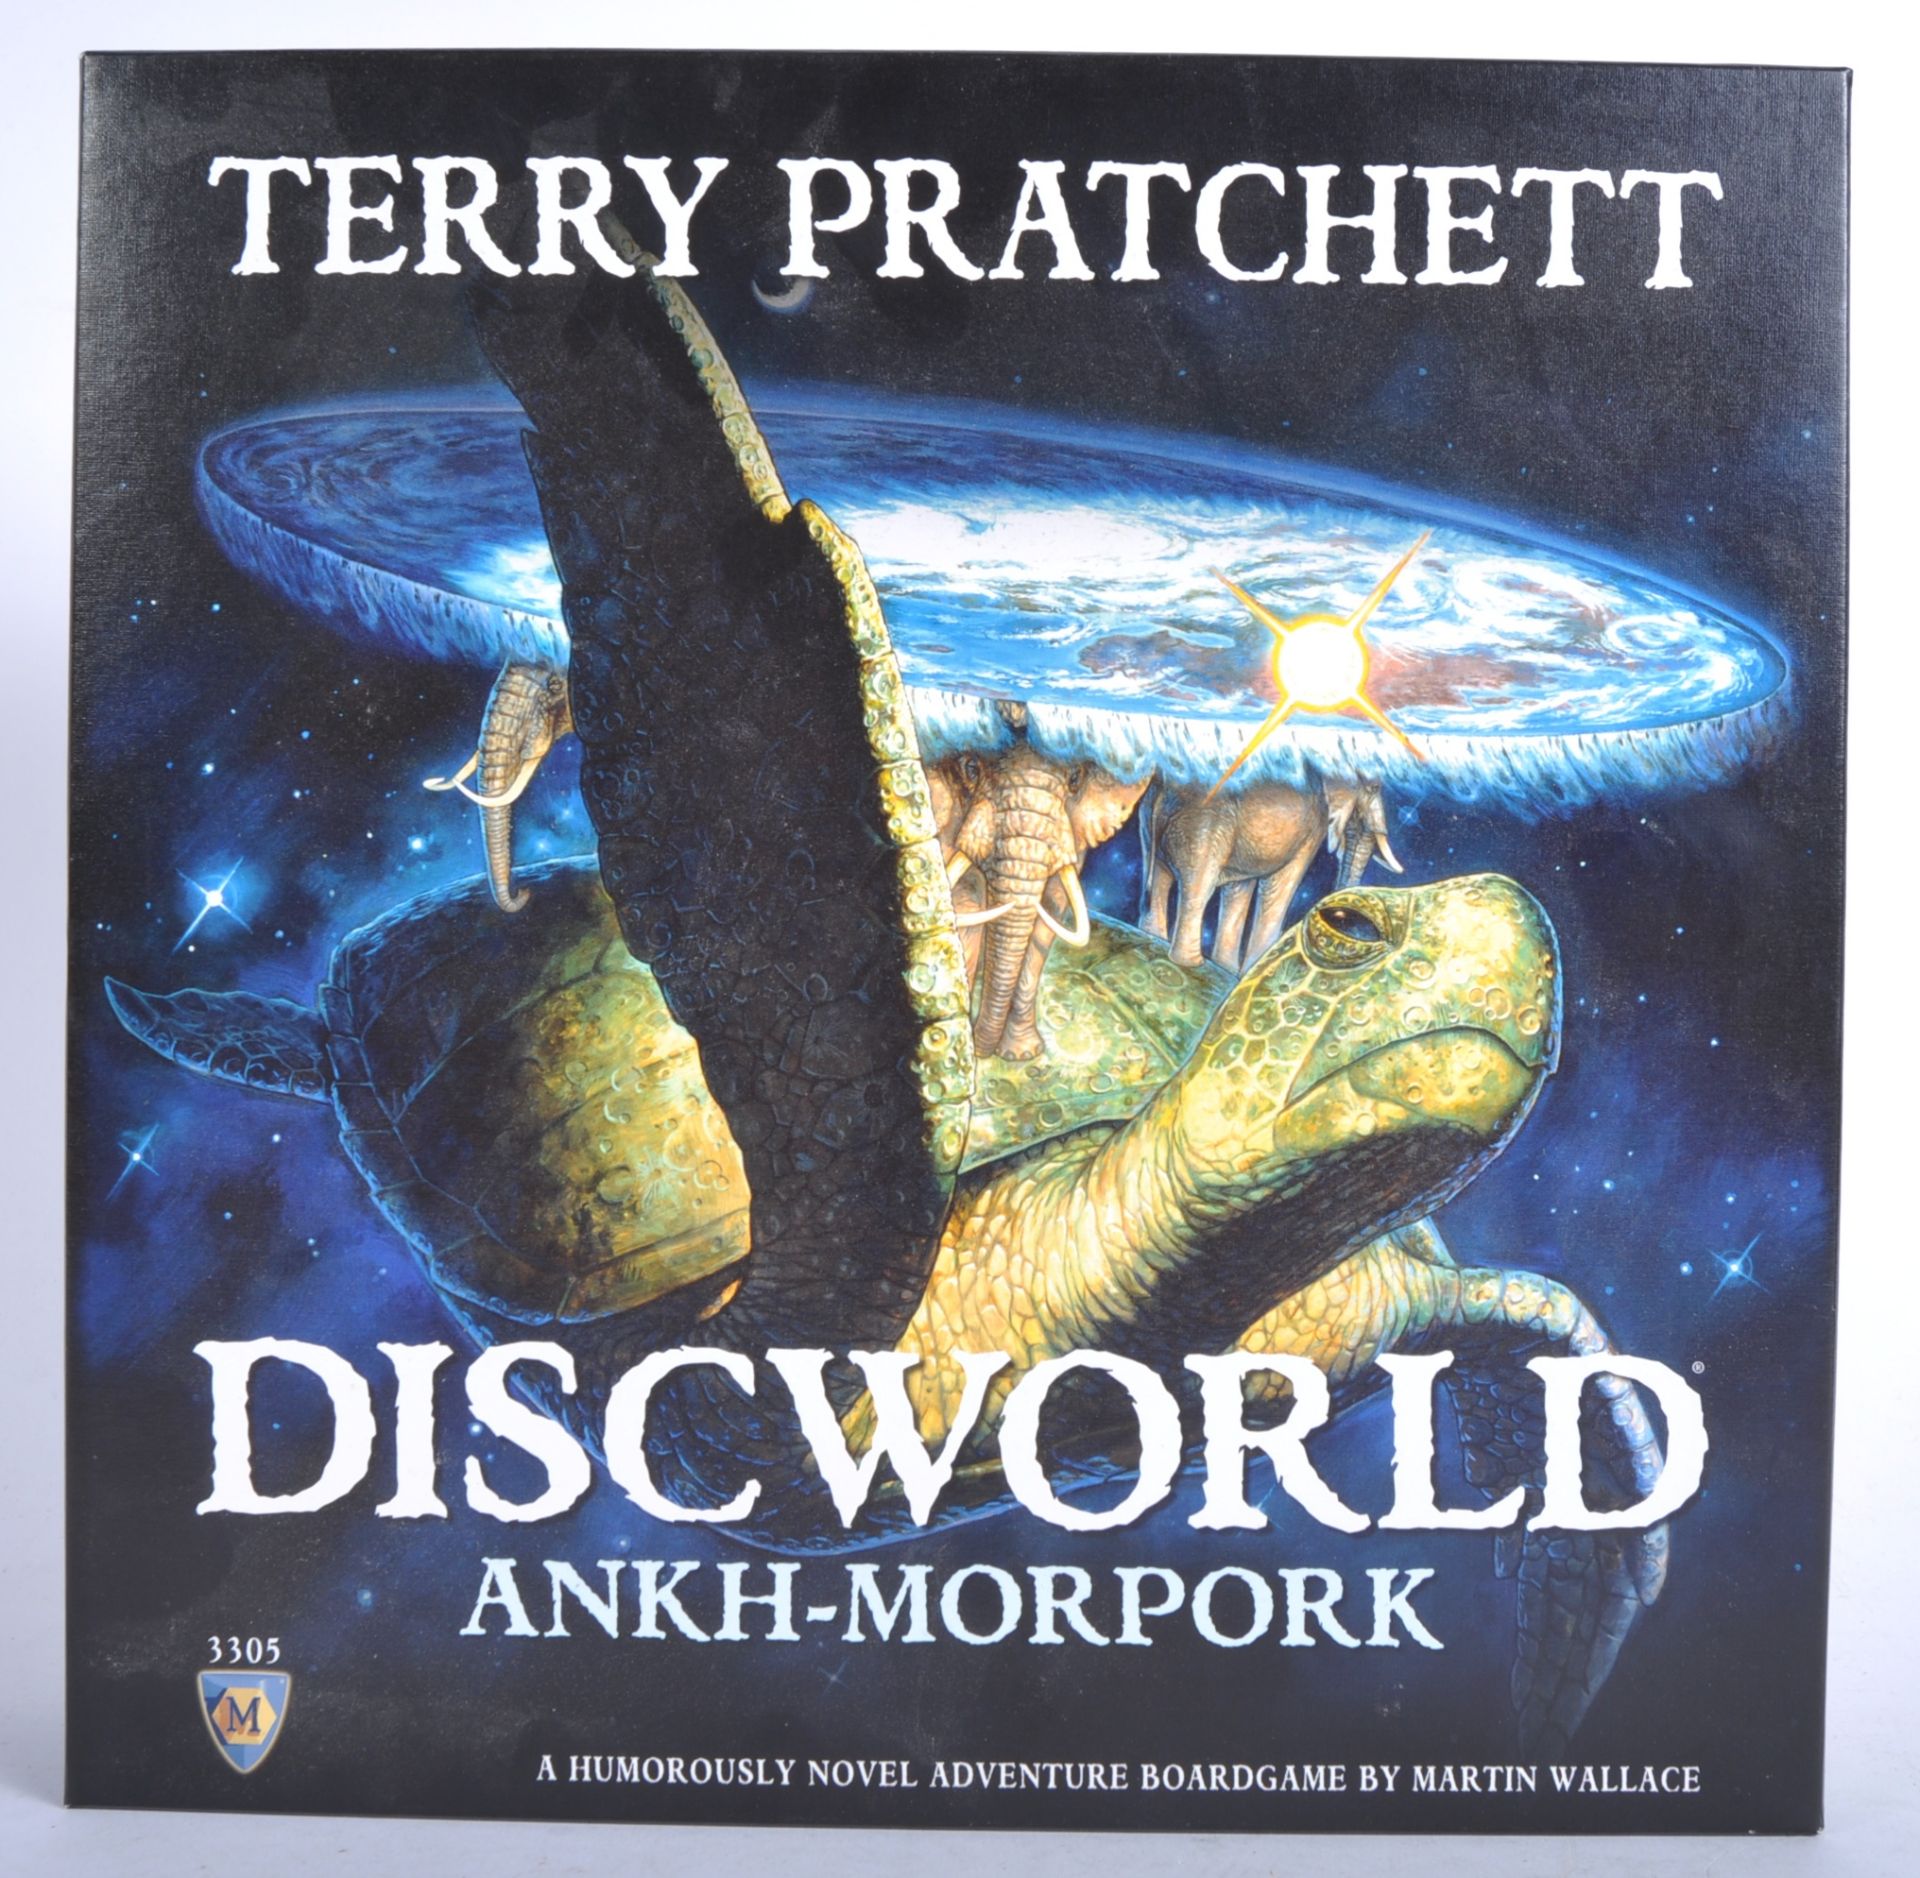 TERRY PRATCHETT DISCWORLD ANKH-MORPORK BOARD GAME